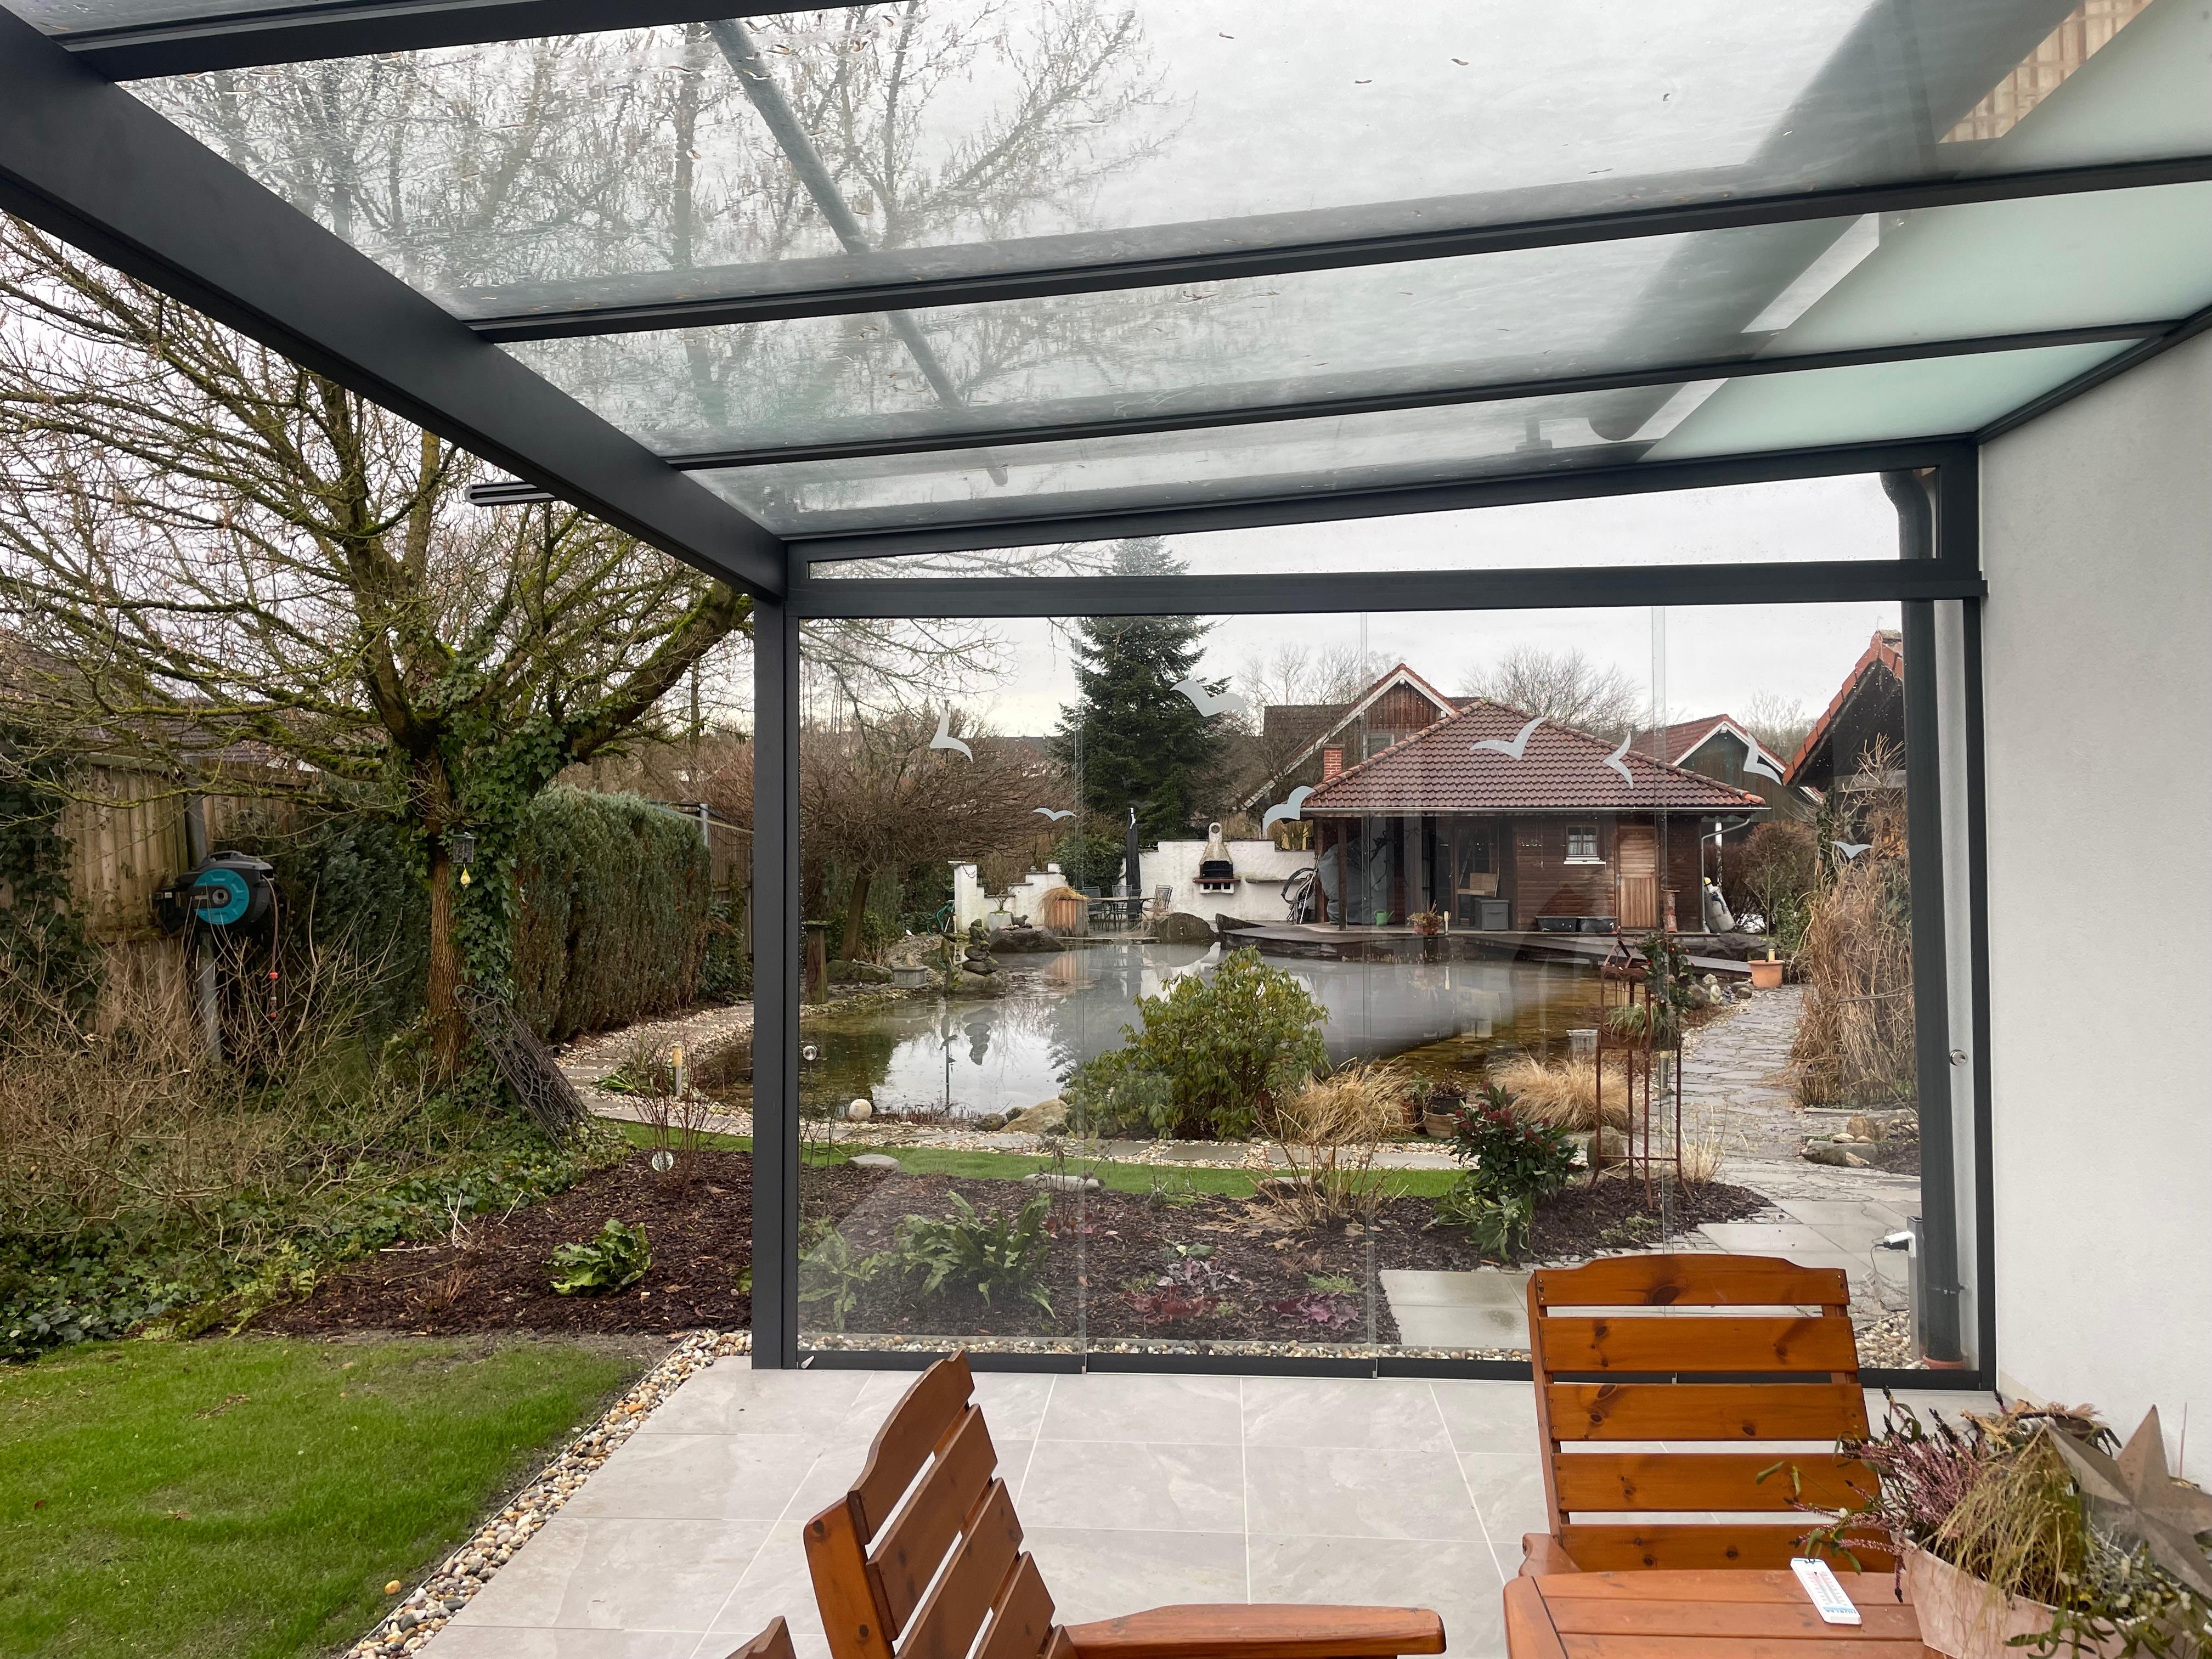 Terrassenüberdachung mit seitlichen Glasschiebetüren ist ideal, um sich vor Wind zu schützen. So kann man die Terrasse auch bei windigem Wetter genießen.